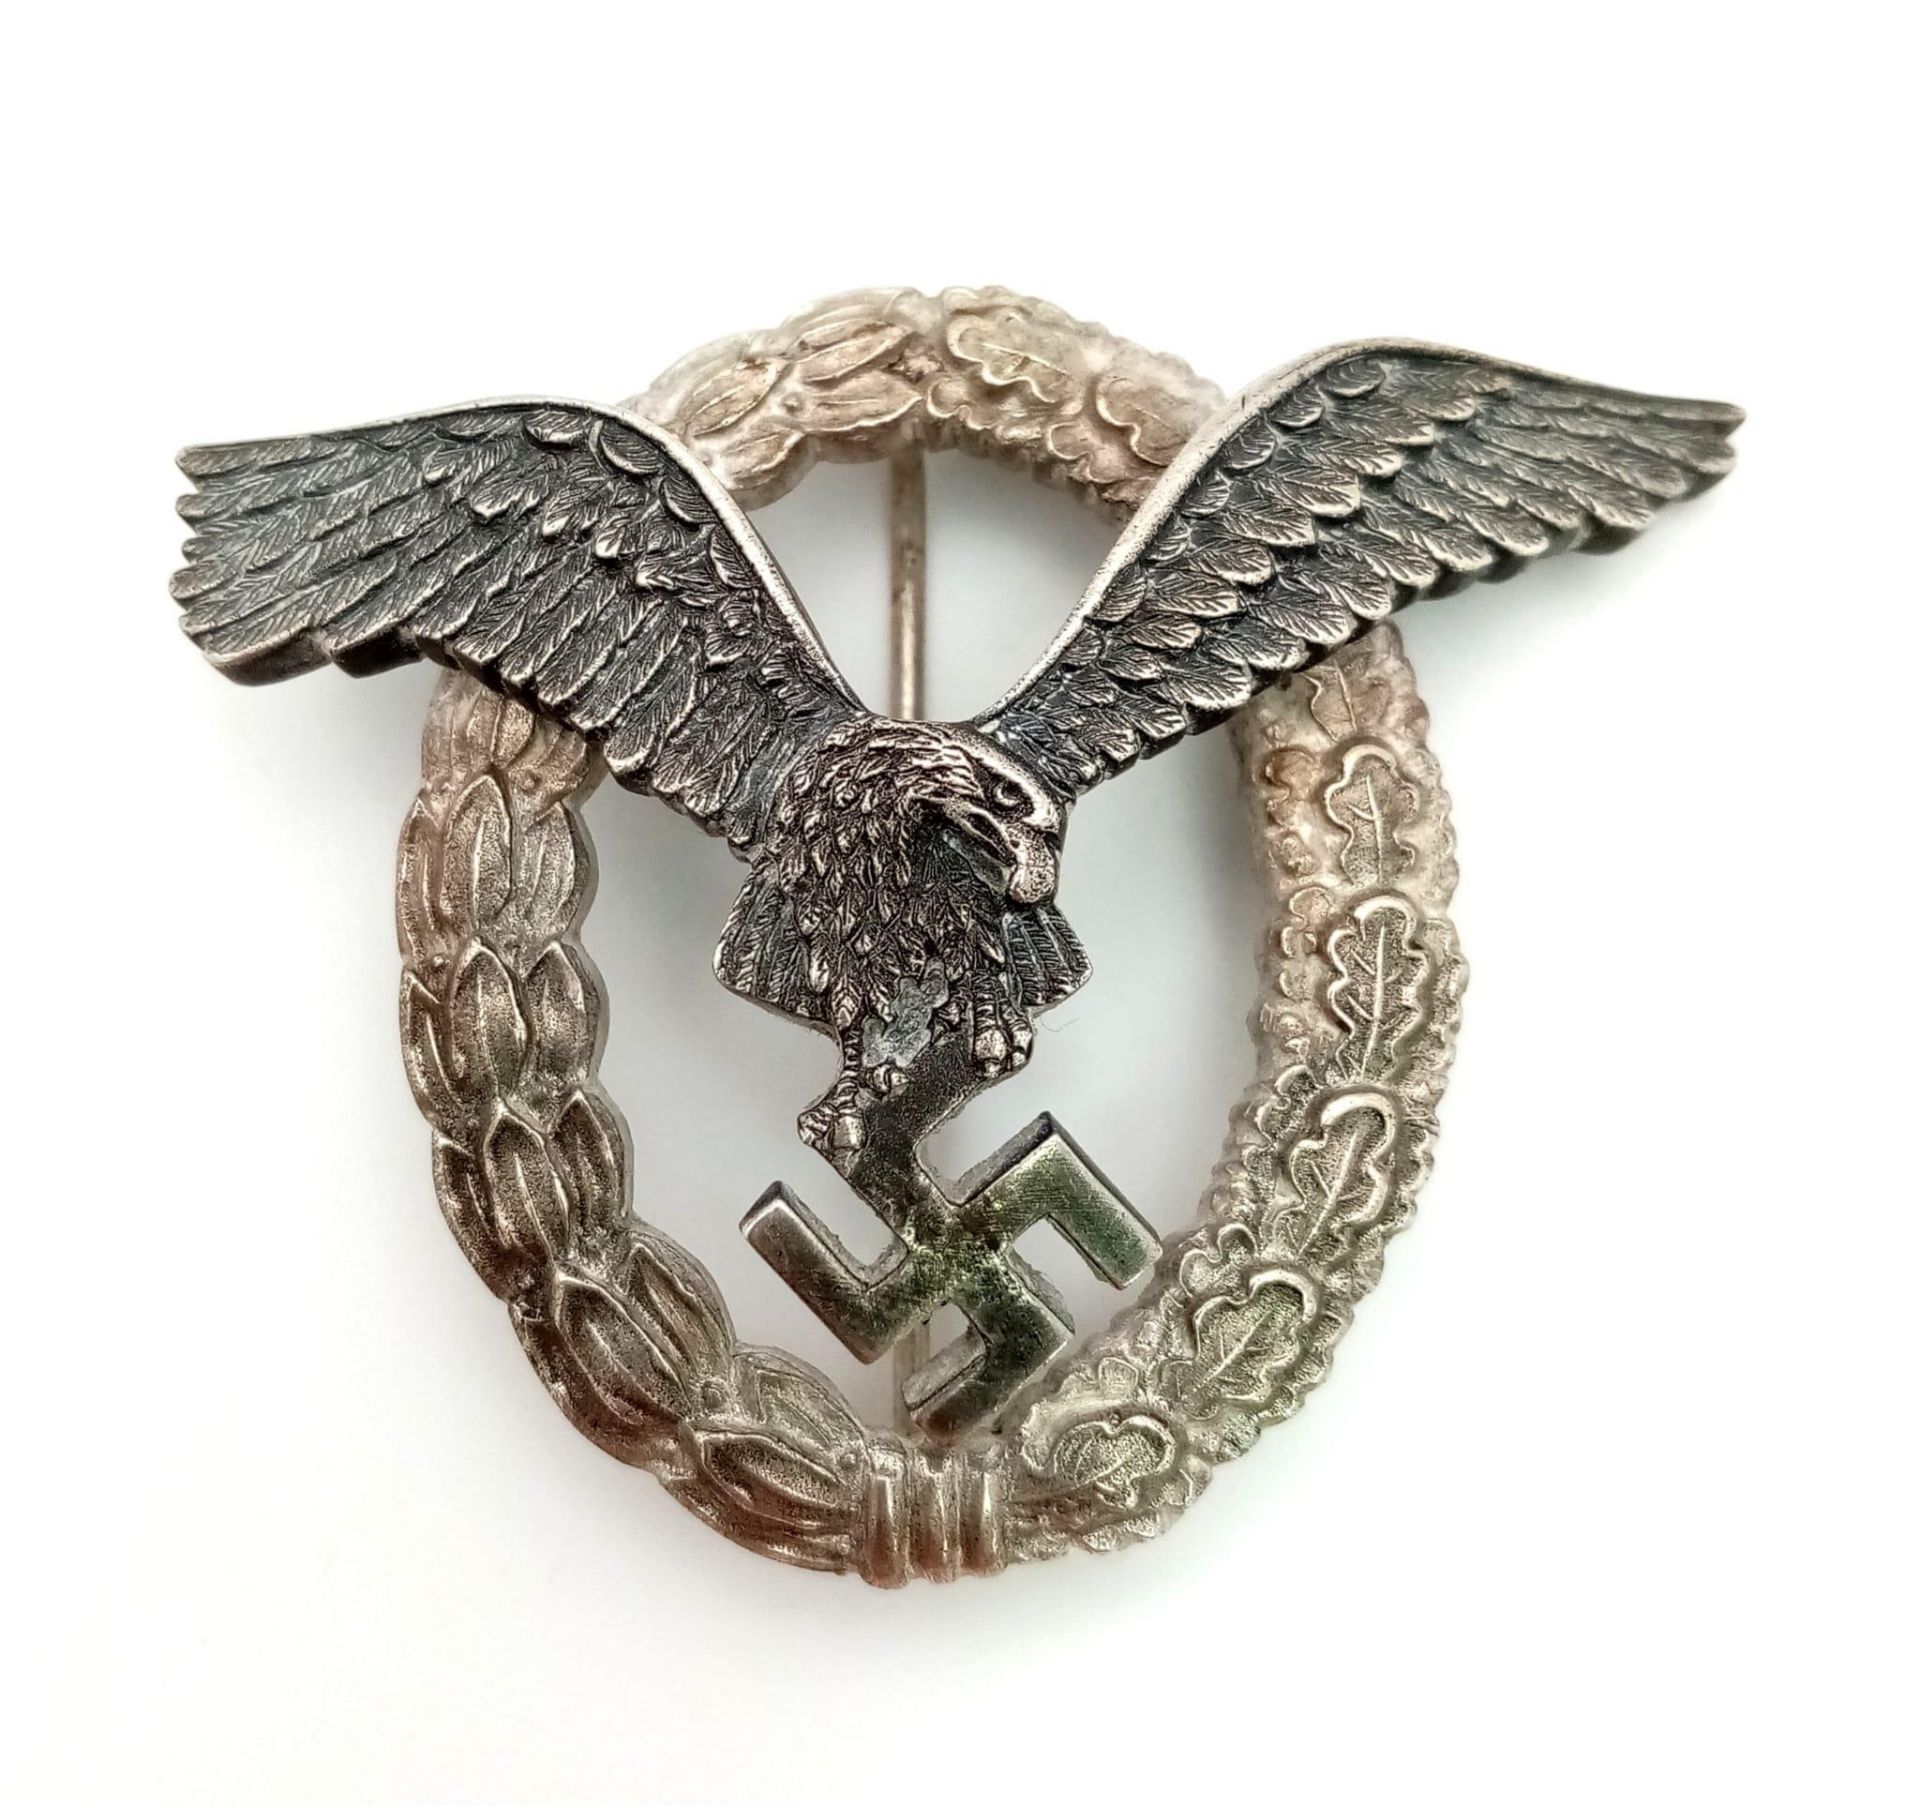 3rd Reich Luftwaffe Pilots Badge. Maker: B & NL. (Berg & Nolte)